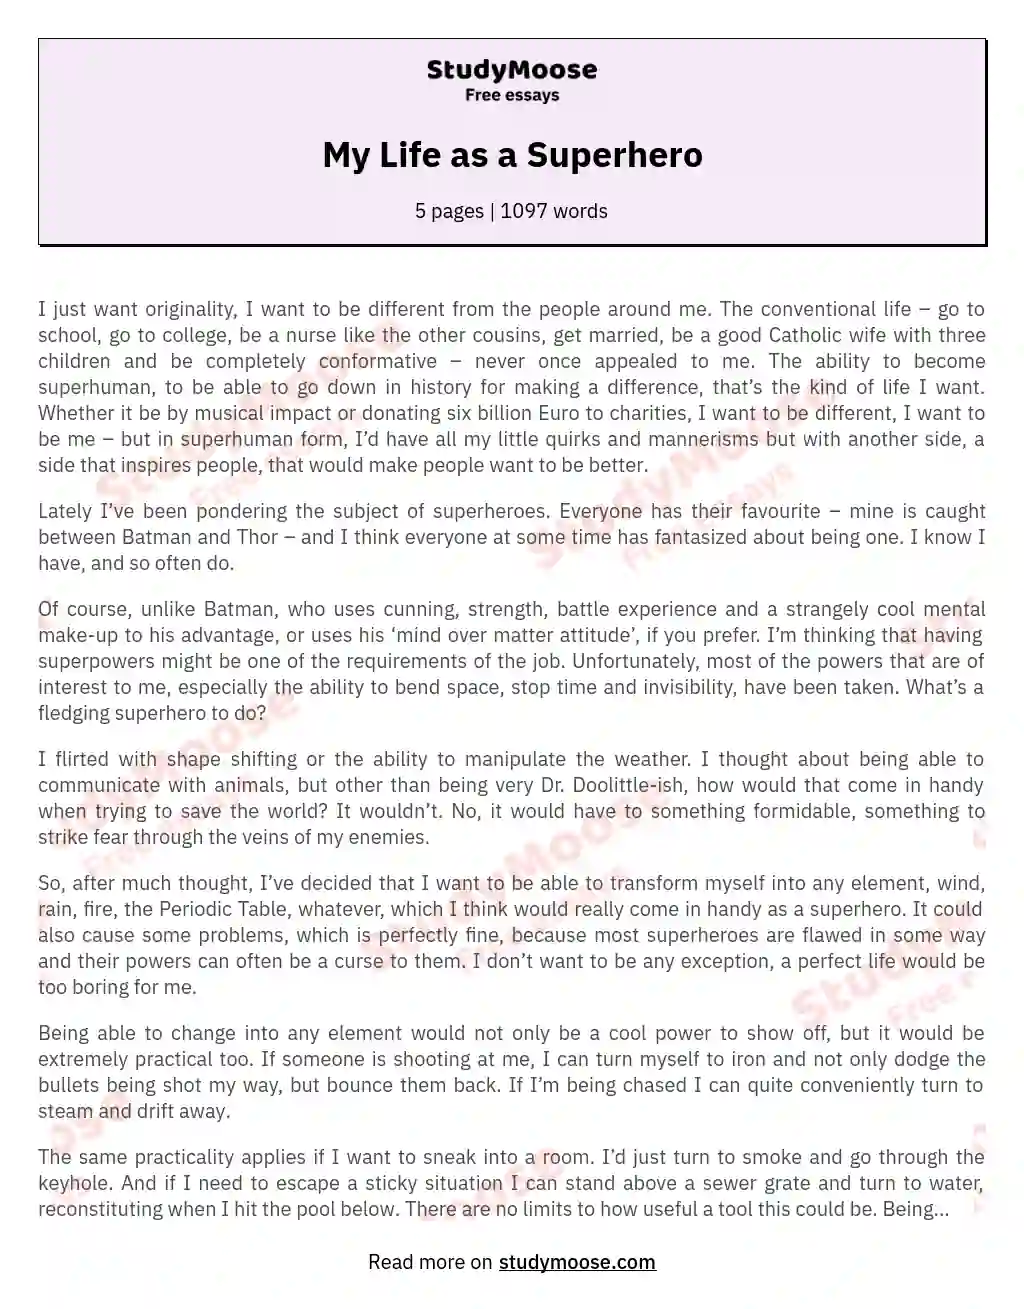 My Life as a Superhero essay